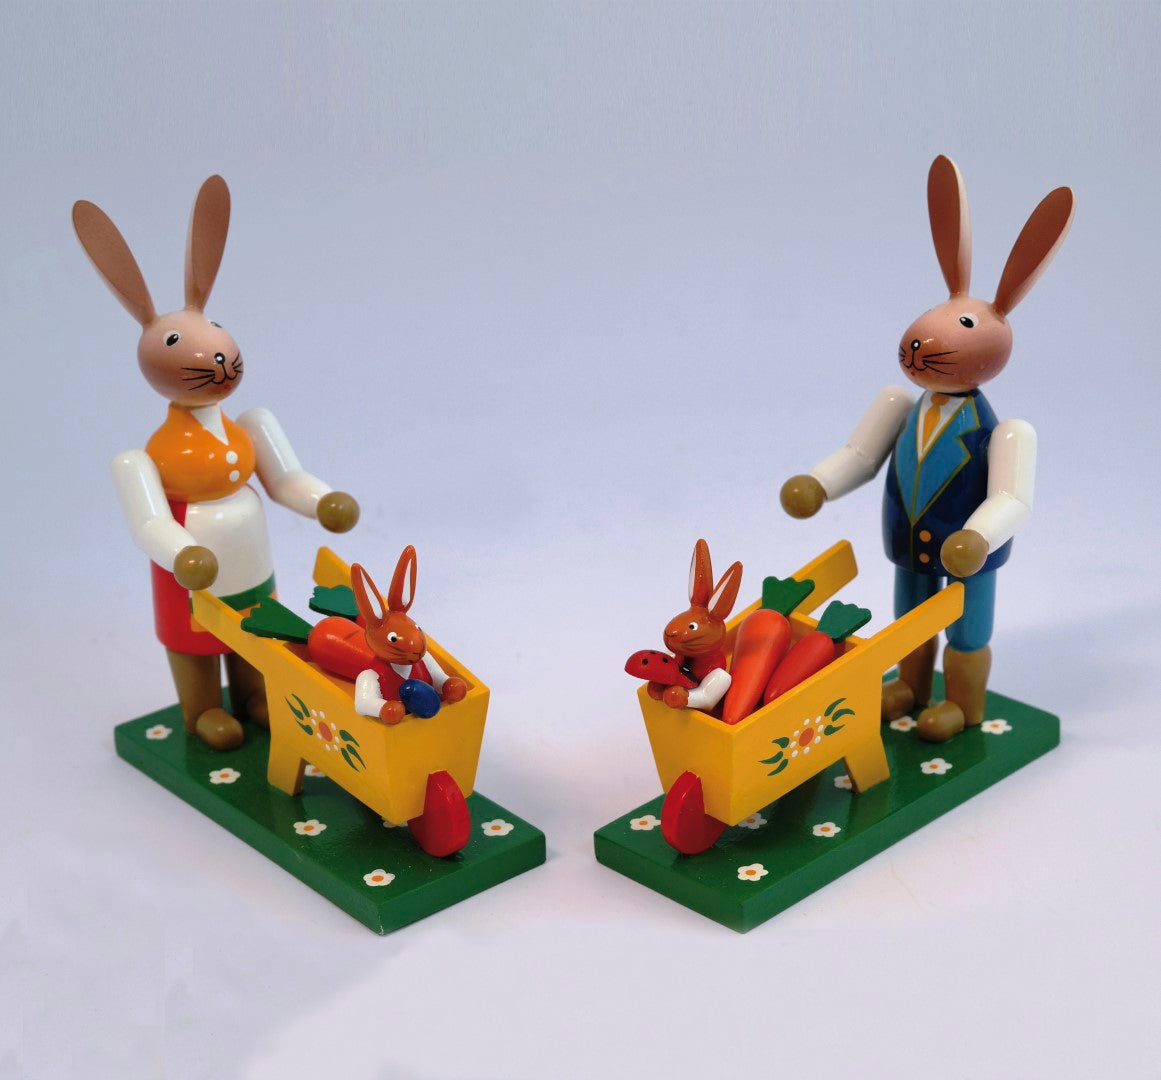 Pair of rabbits with wheelbarrow